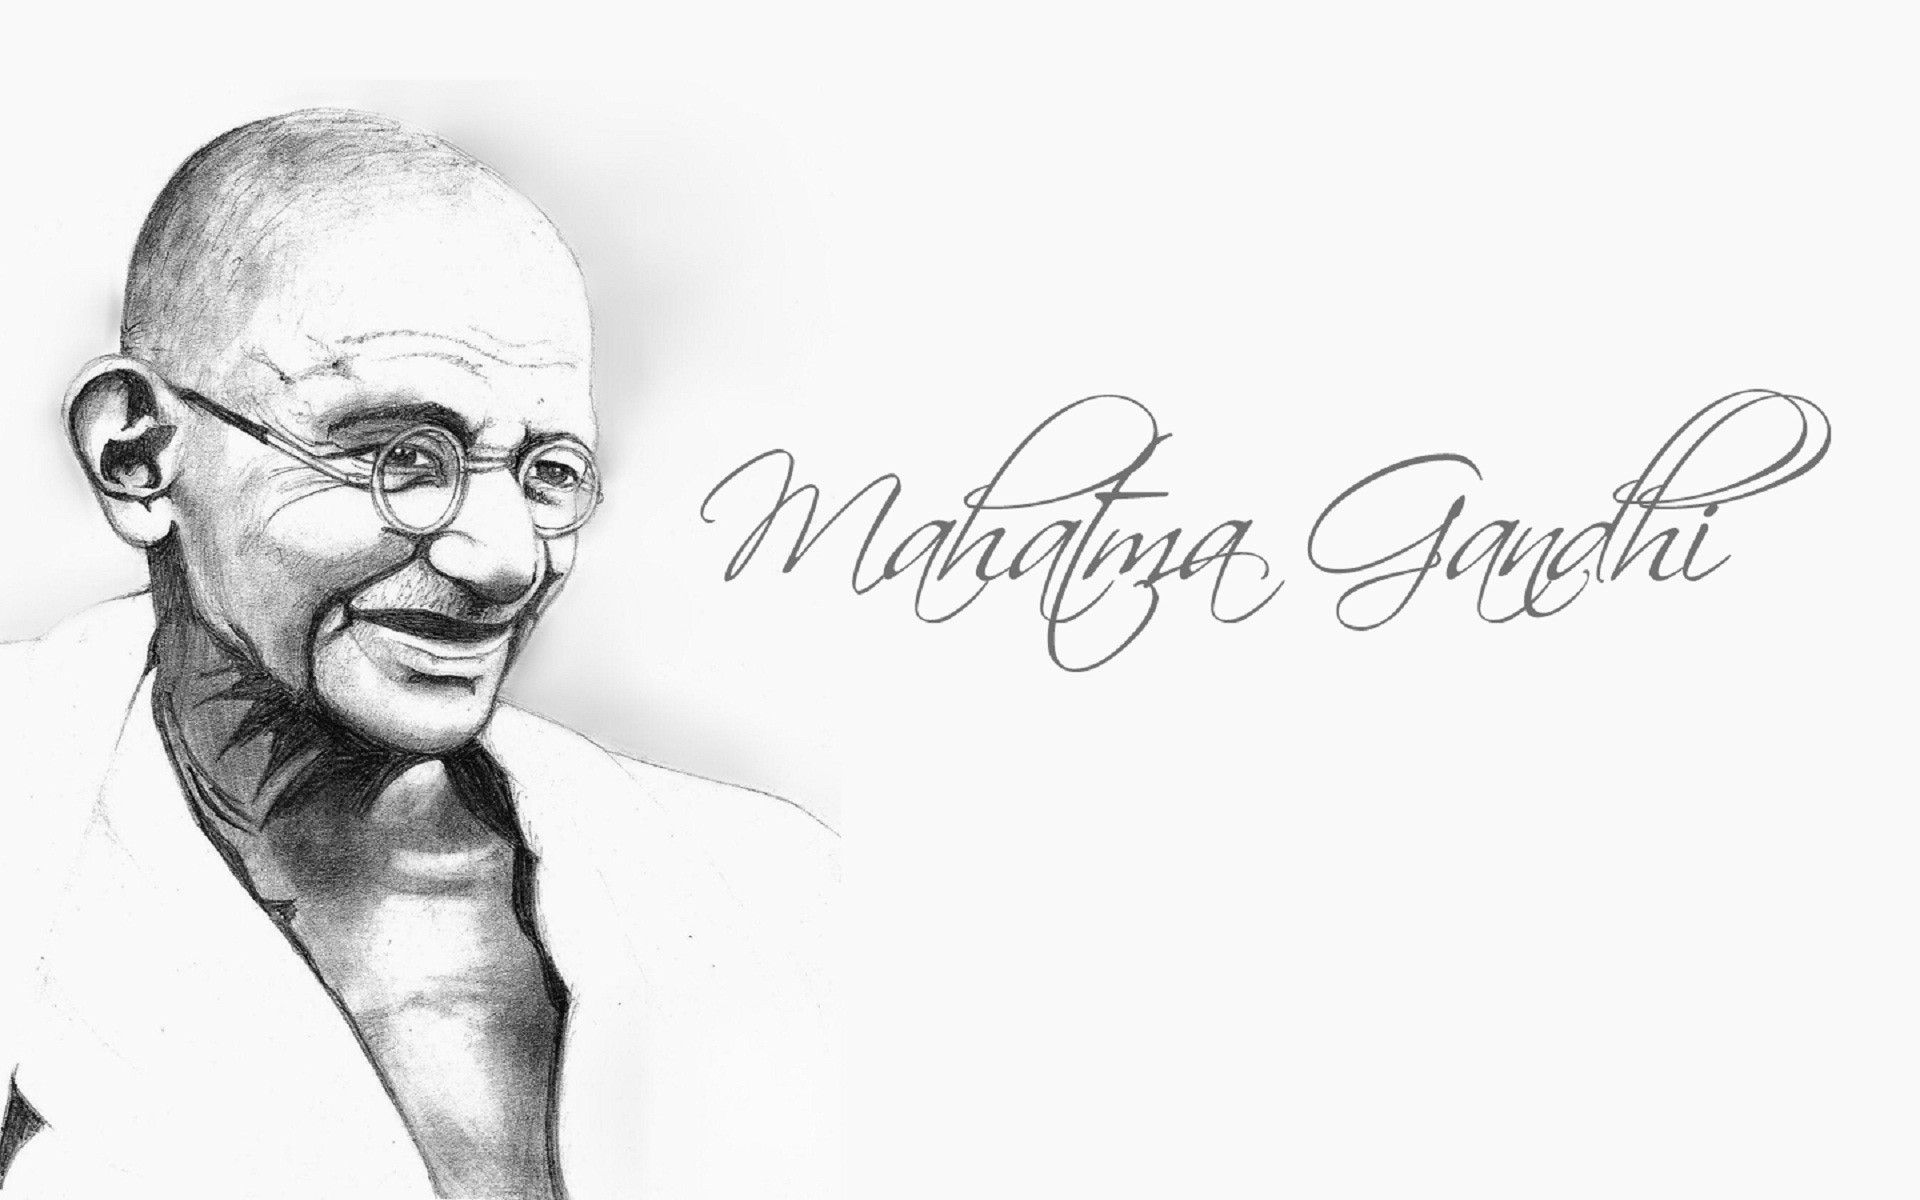 Карамчанд ганди. Махатма Ганди. Портрет Махатмы Ганди. Мохандас Карамчанд (Махатма) Ганди. Махатма Ганди (1869-1948).